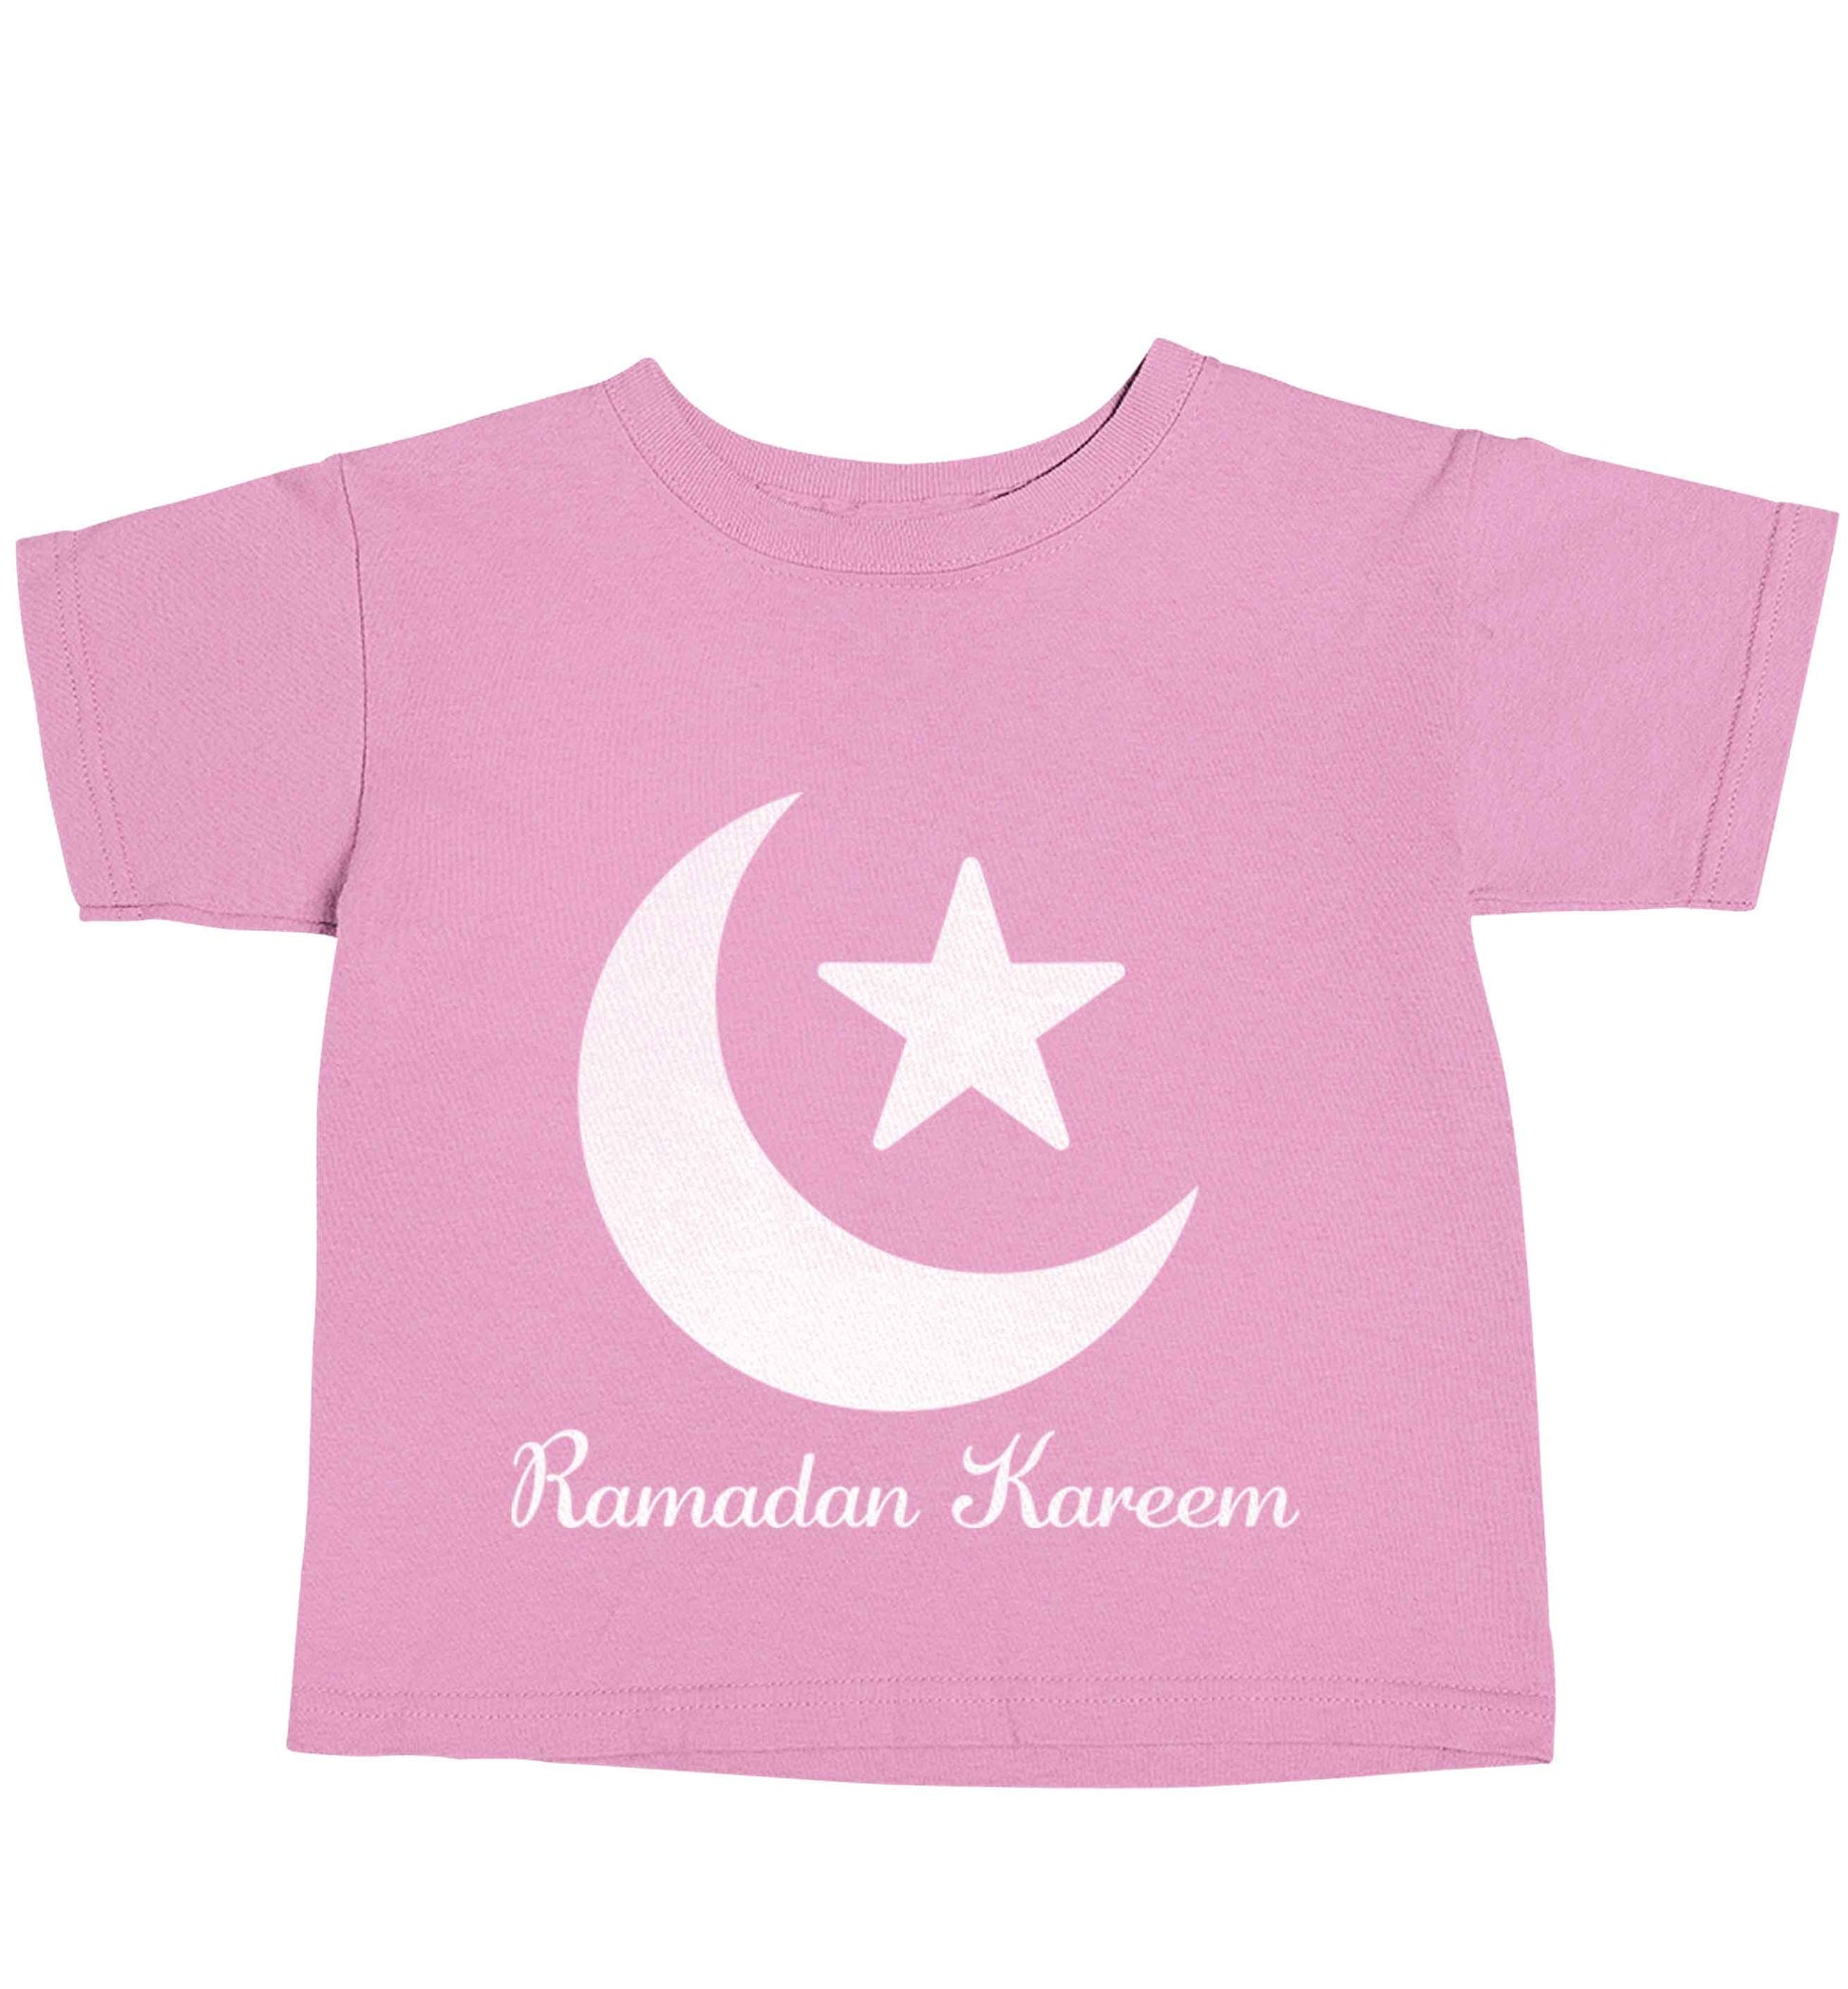 Ramadan kareem light pink baby toddler Tshirt 2 Years